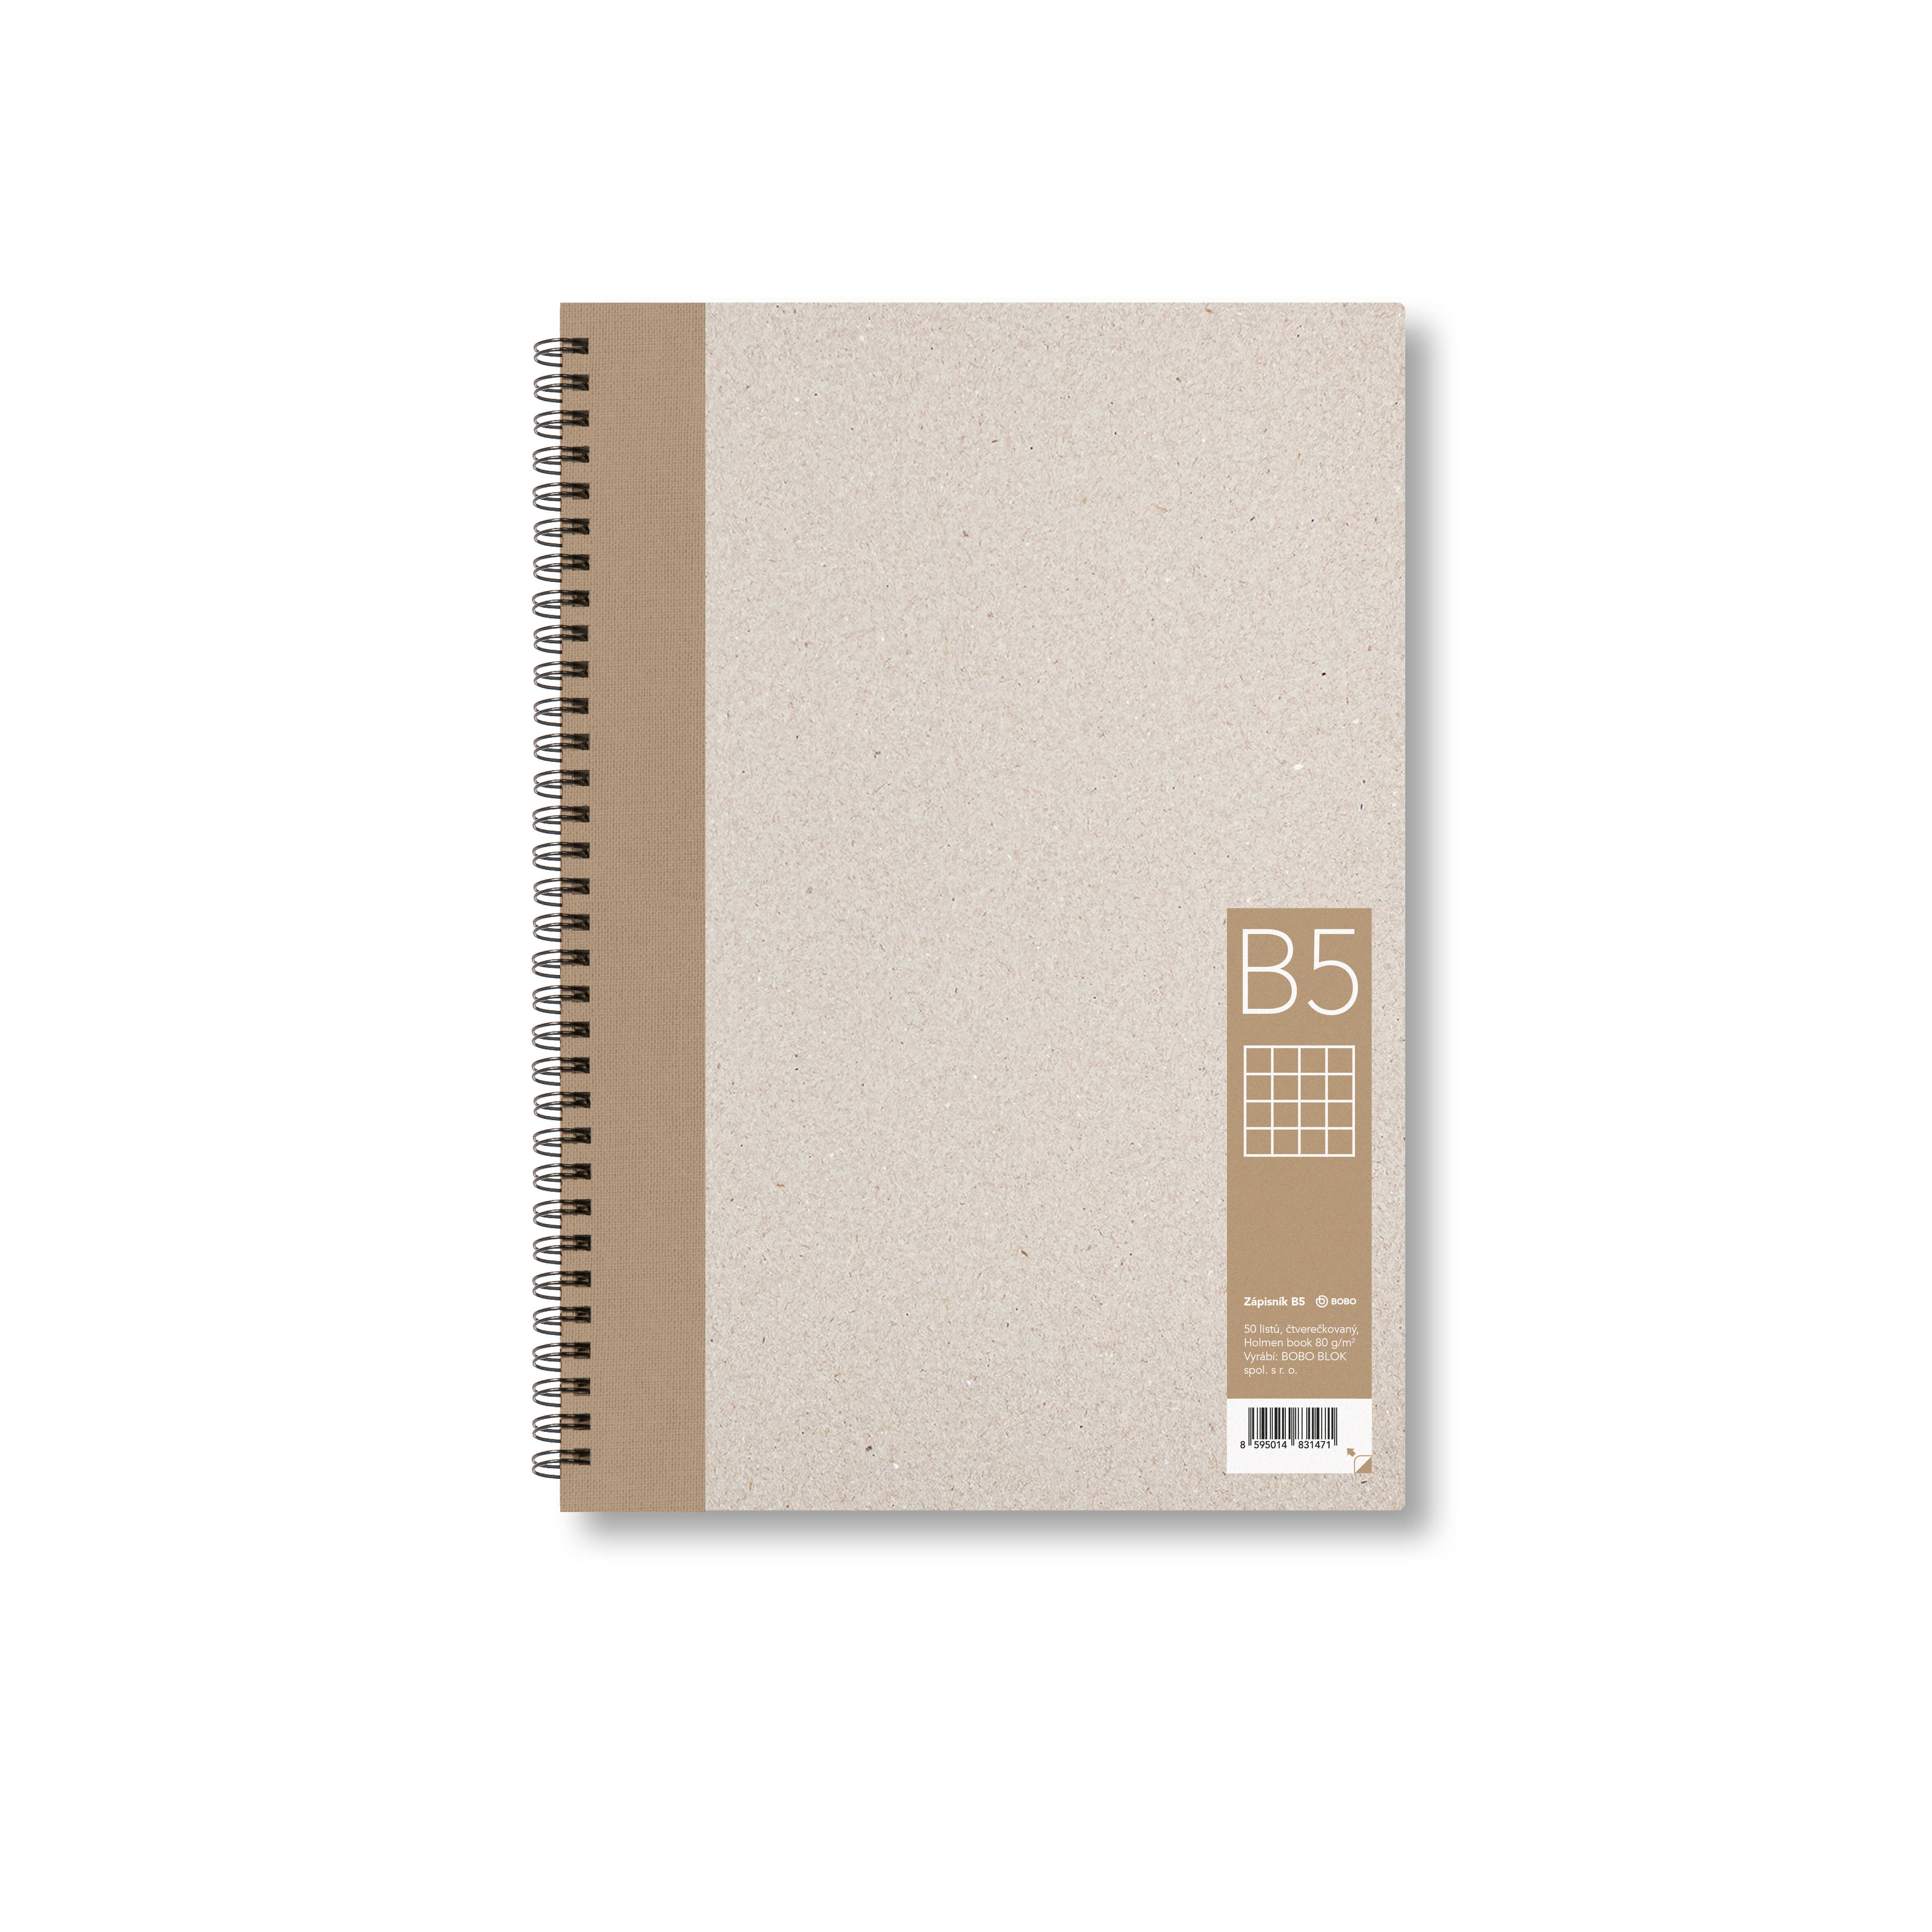 BOBO Zápisník, B5, čtverečkovaný, hnědý